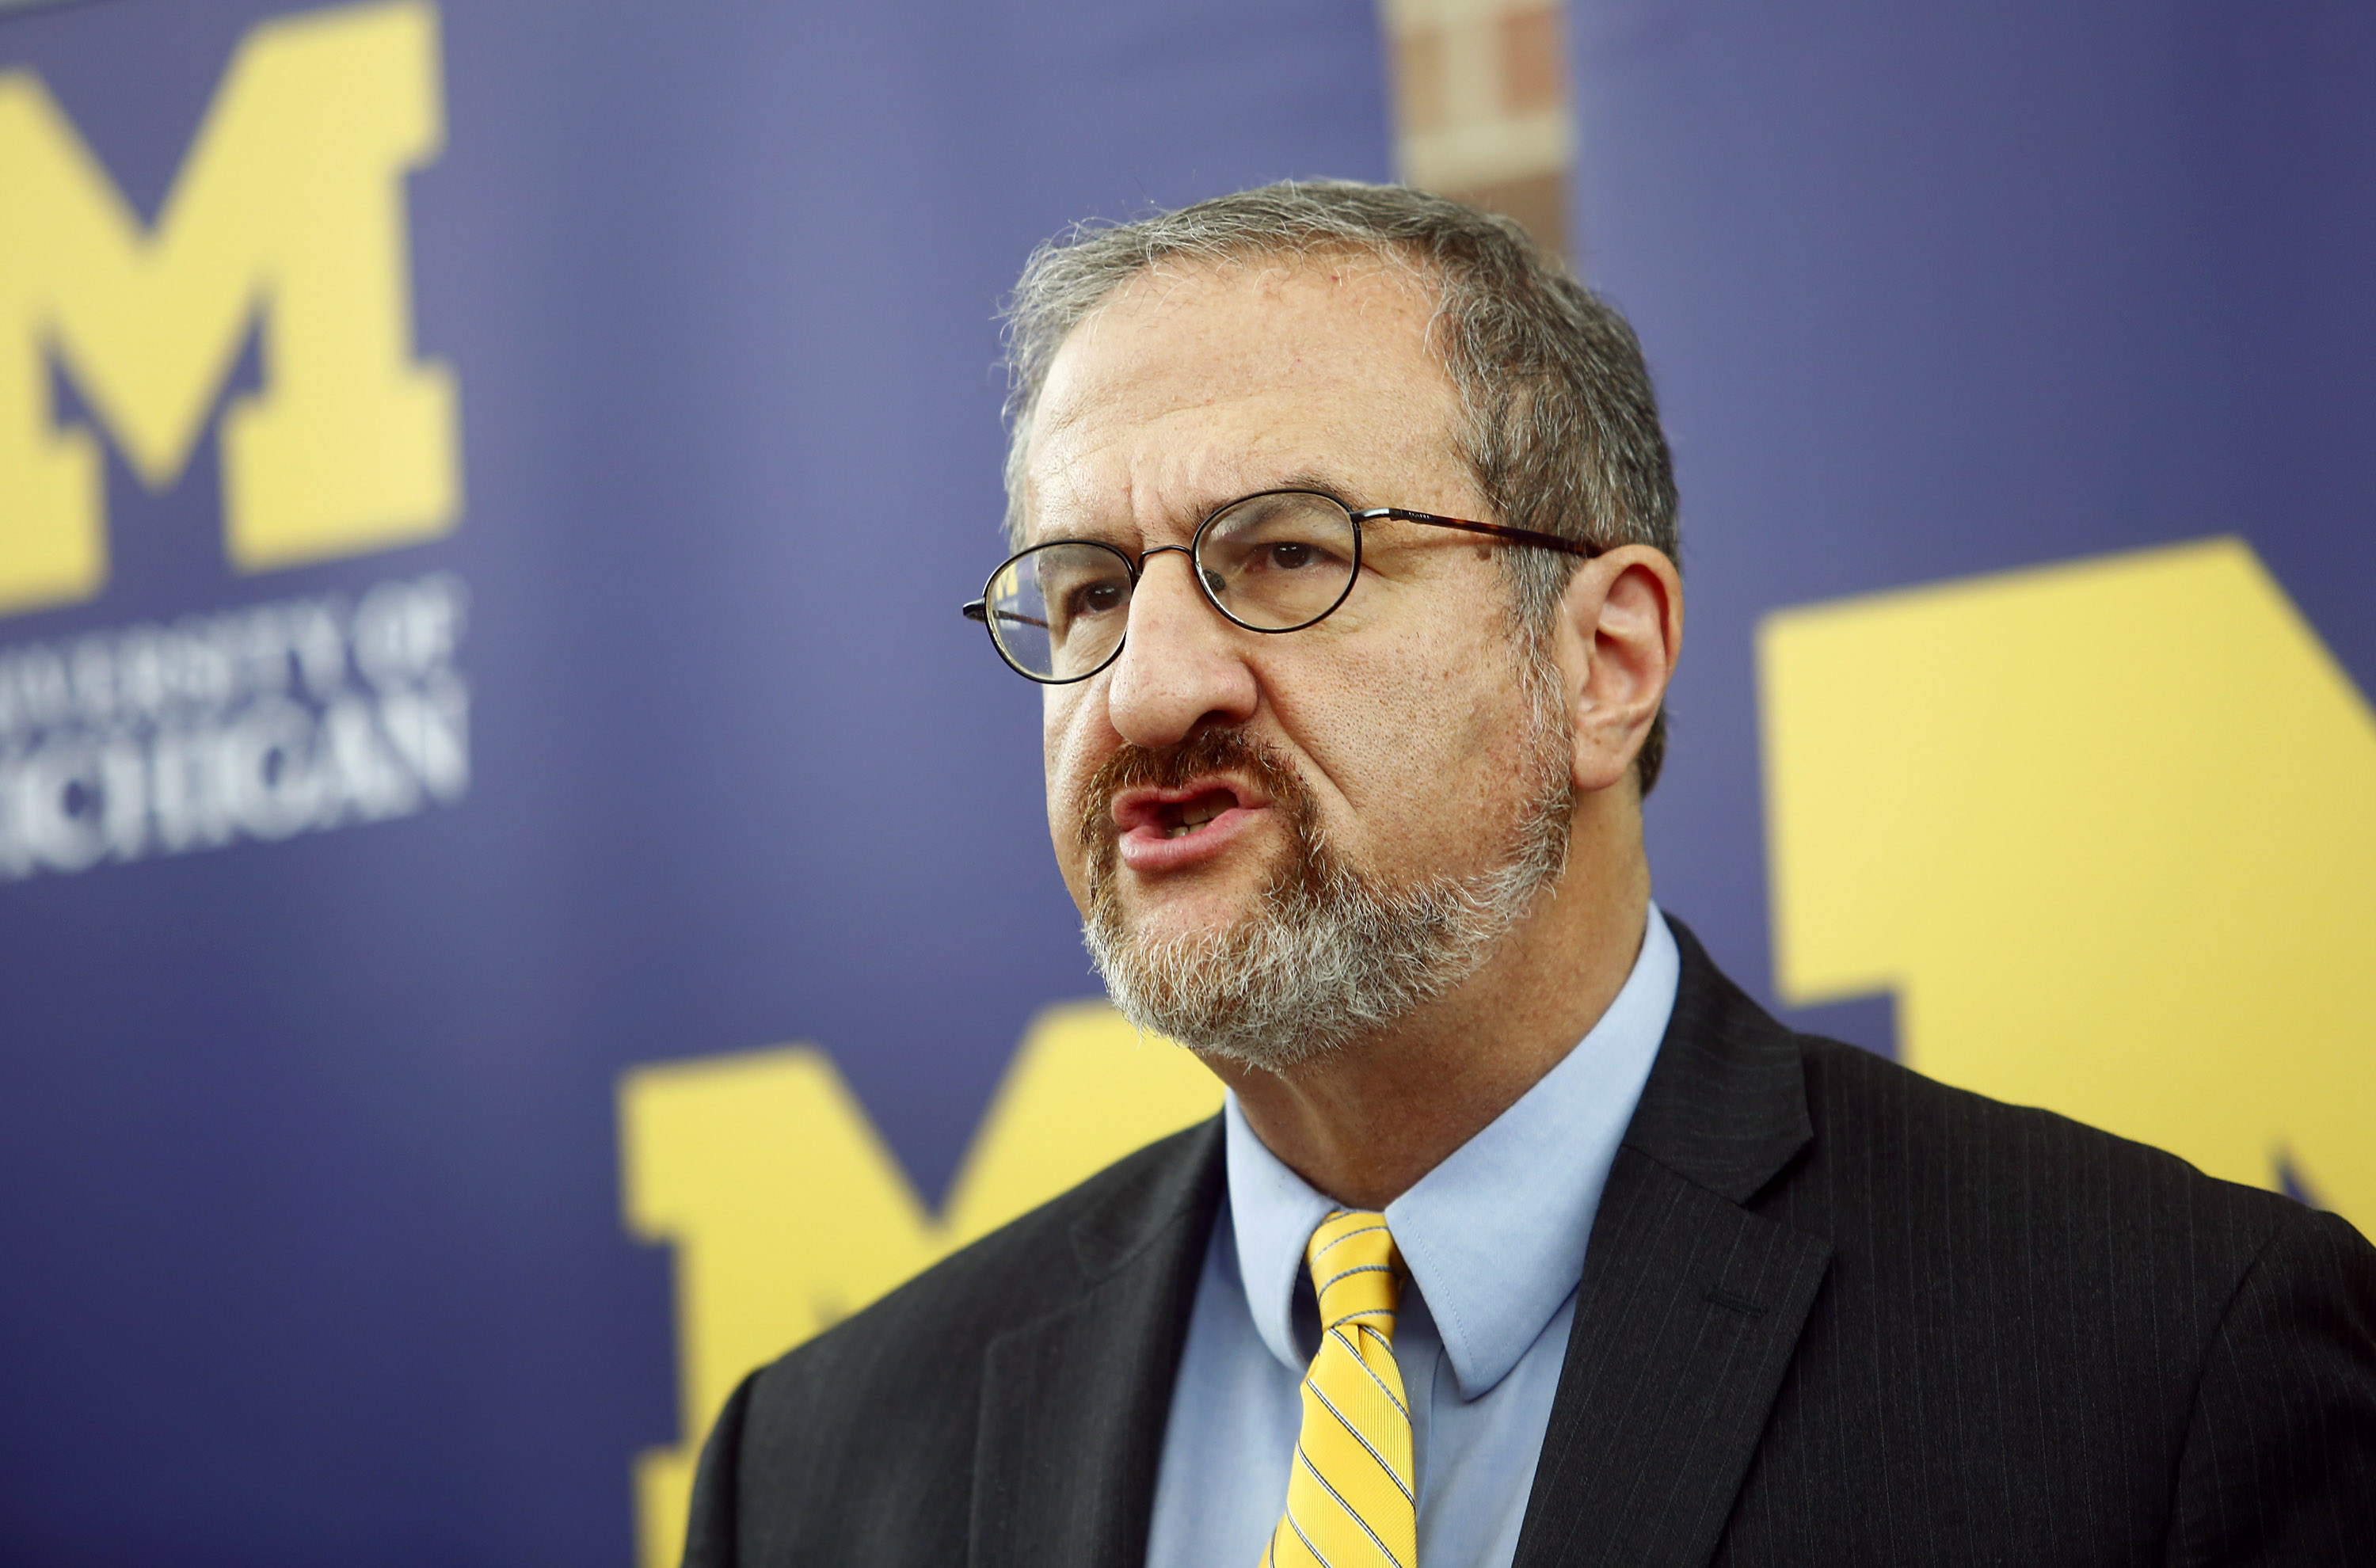 former University of Michigan President Mark Schlissel speaks